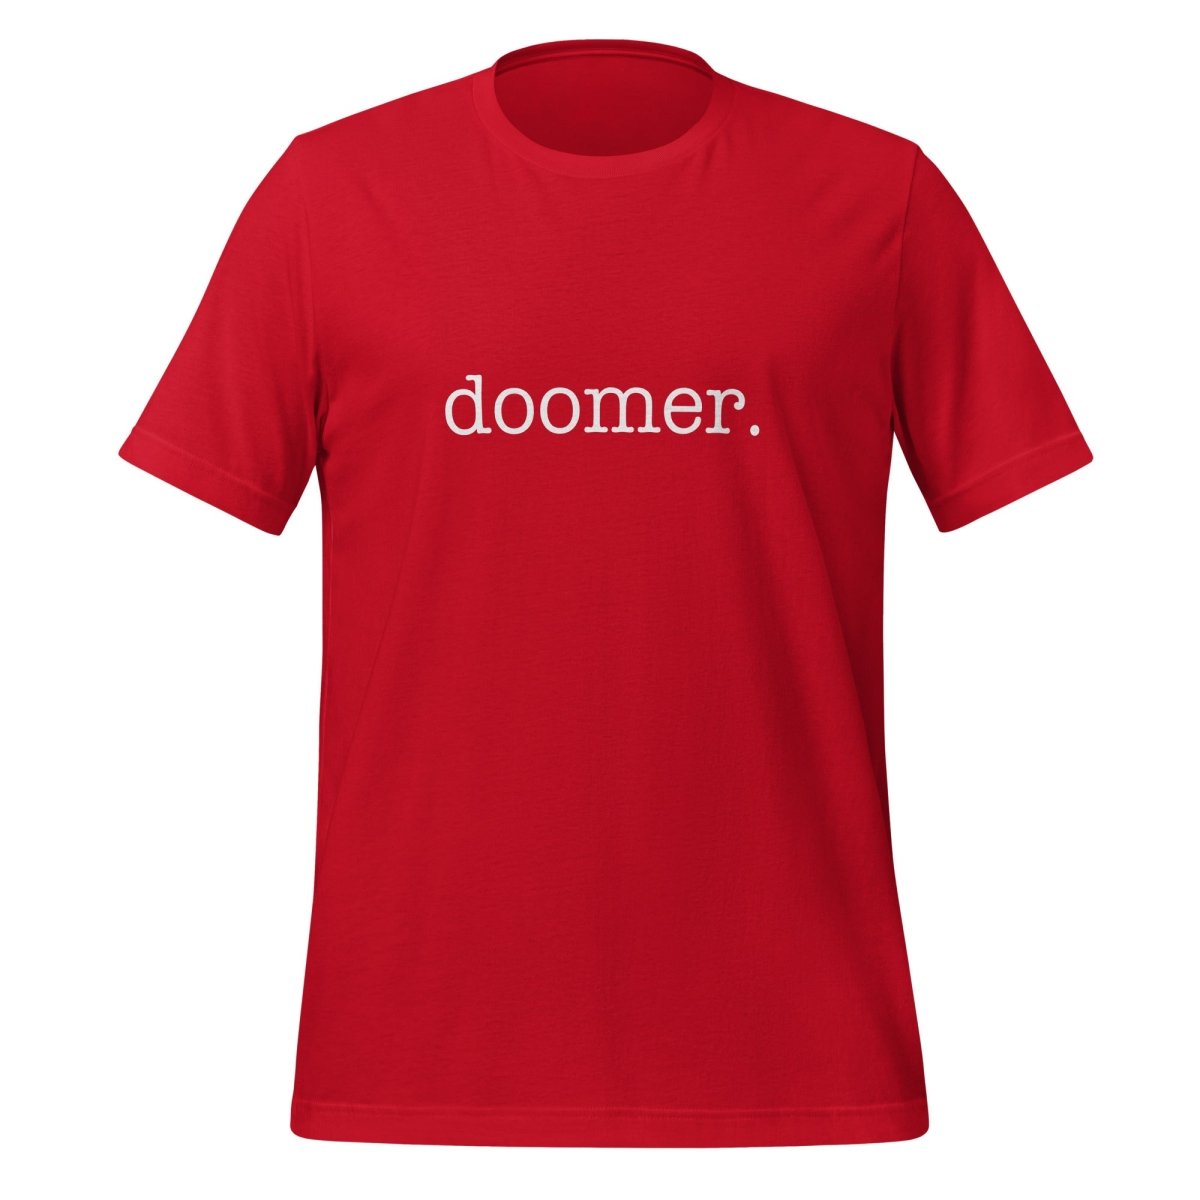 doomer. T - Shirt 1 (unisex) - Red - AI Store